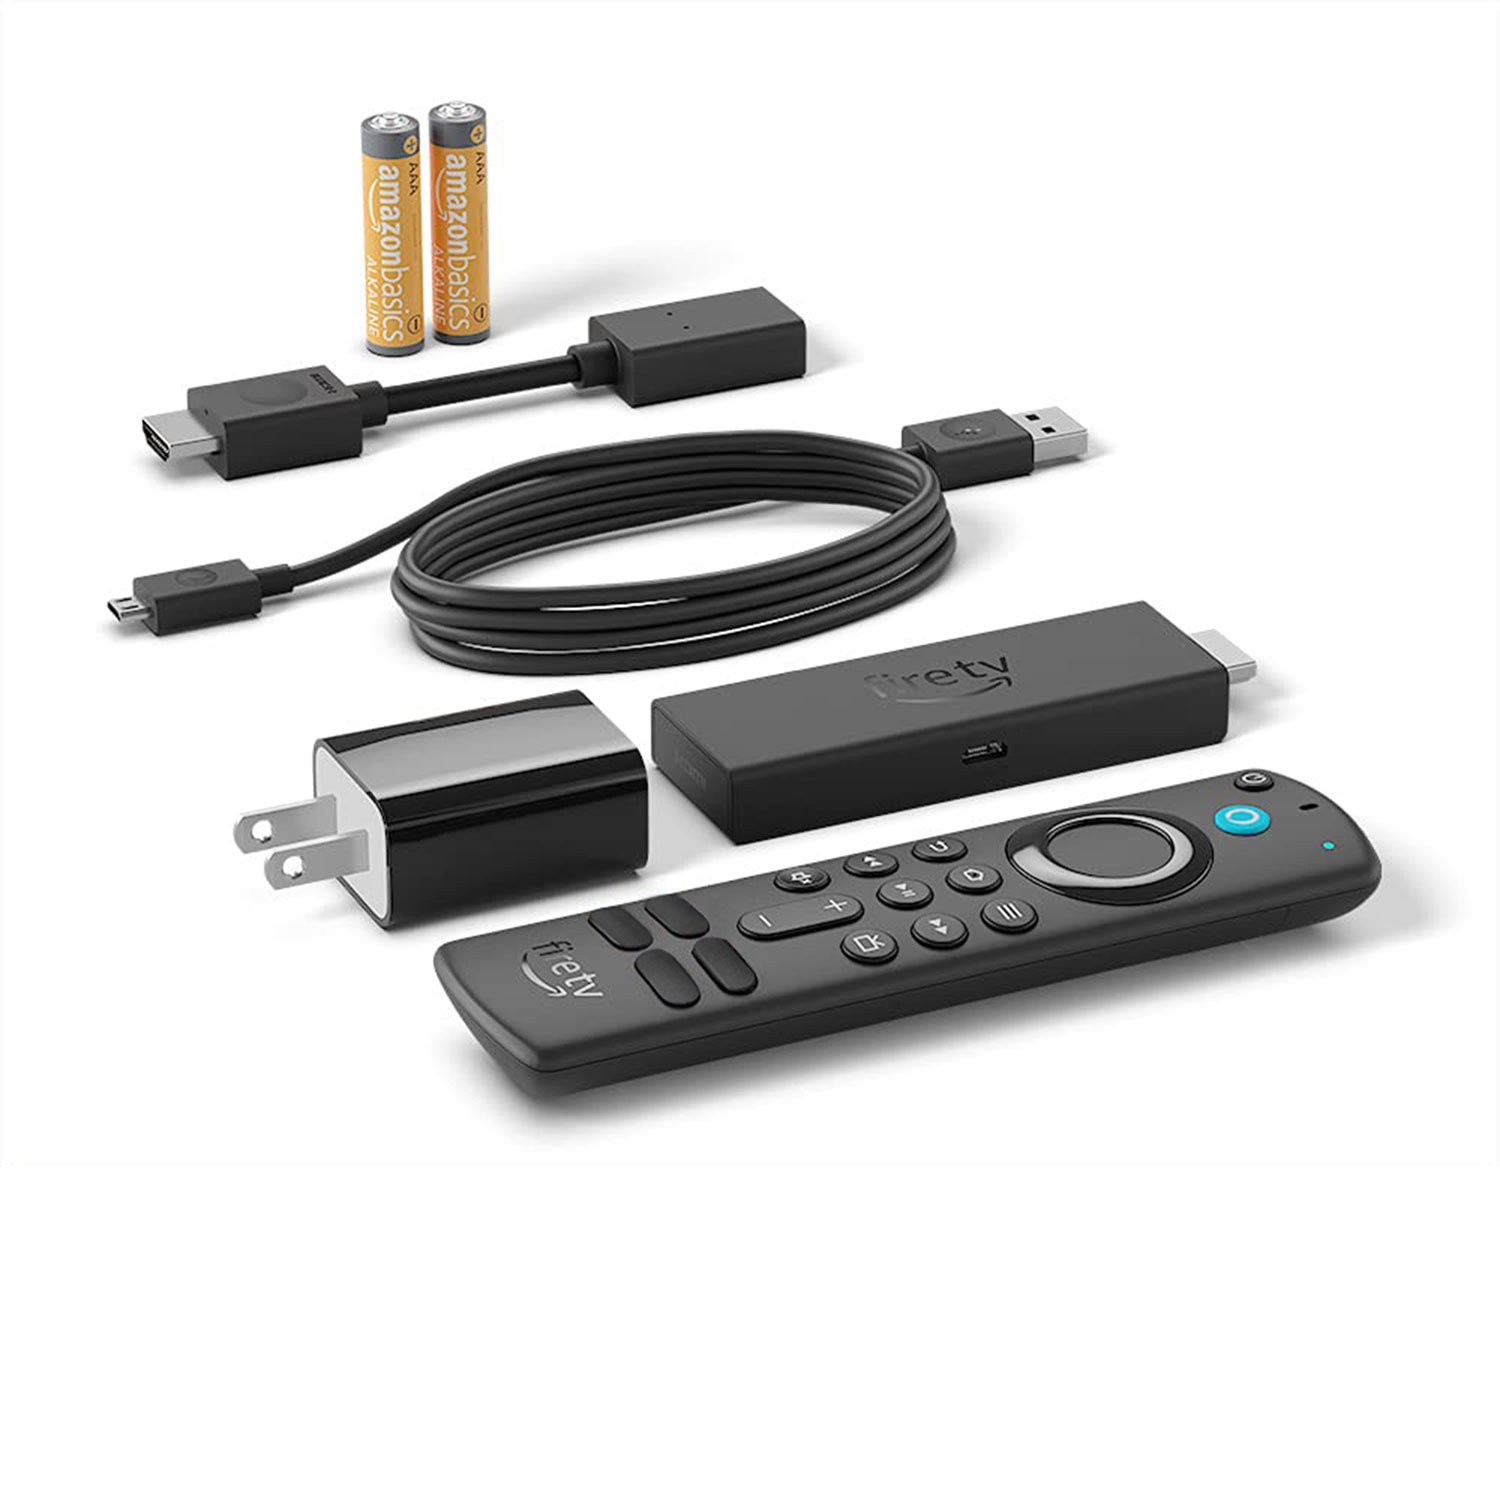 Fire TV Stick Lite with Alexa Voice Remote Lite - Black in